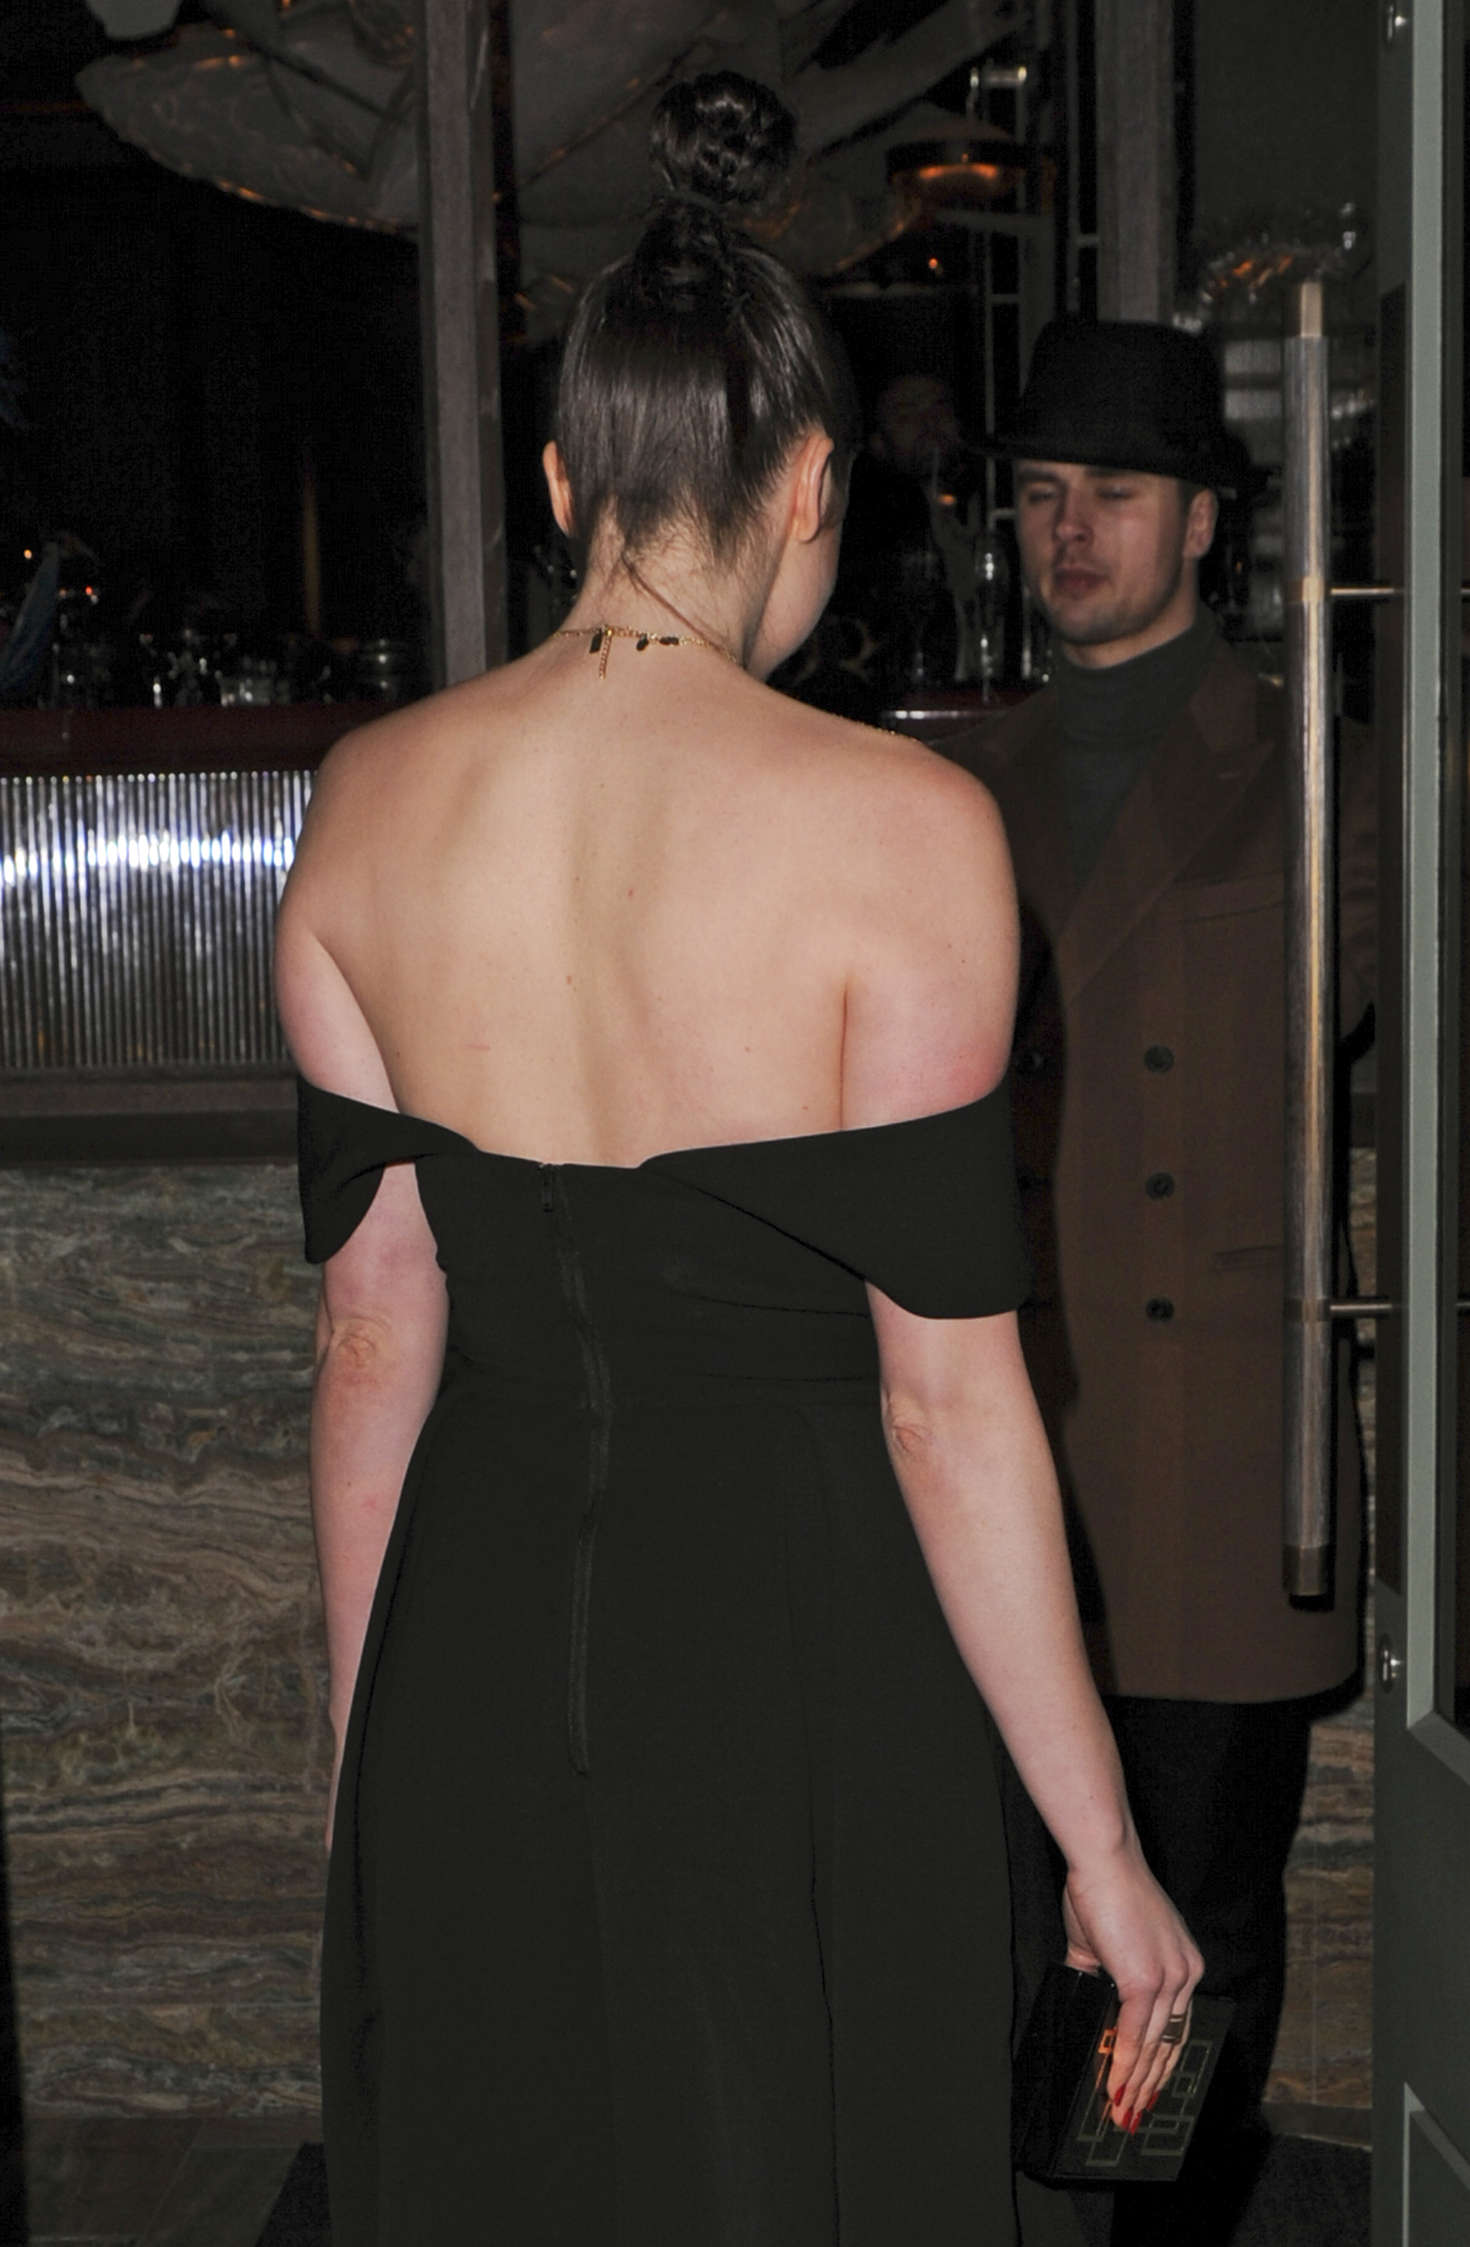 Emma Miller in Black Dress Nightout in London